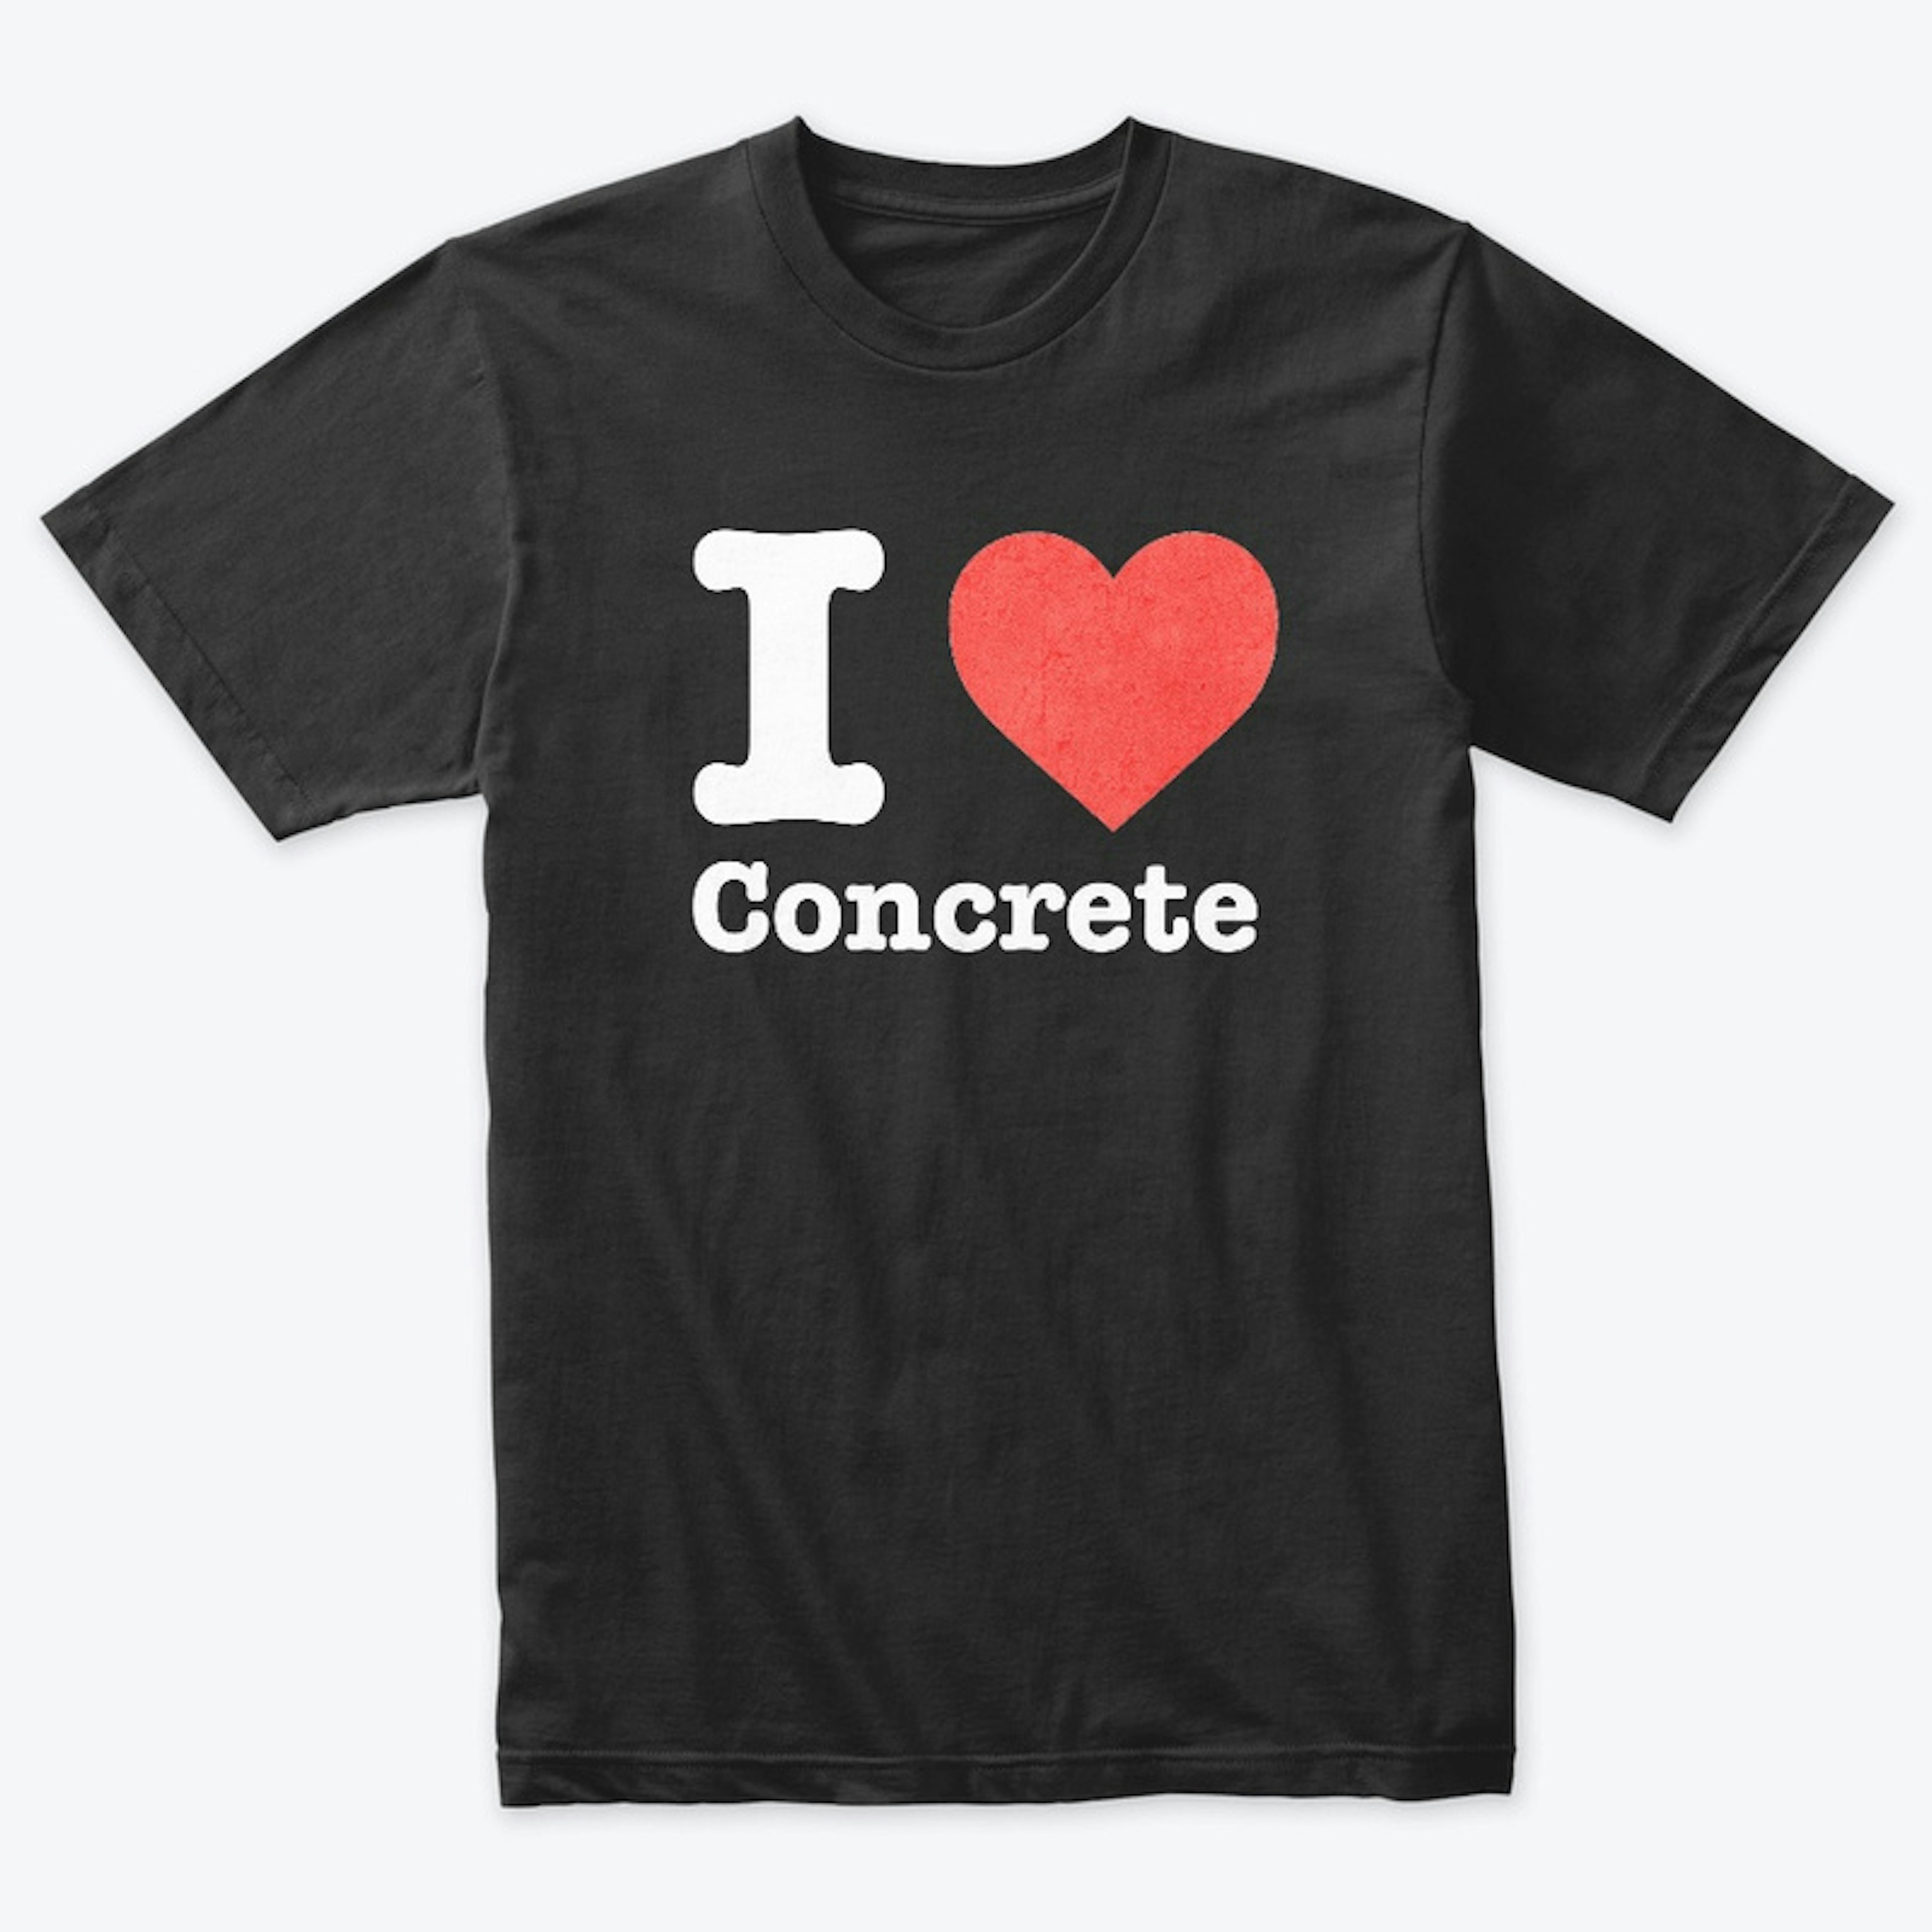 I love concrete